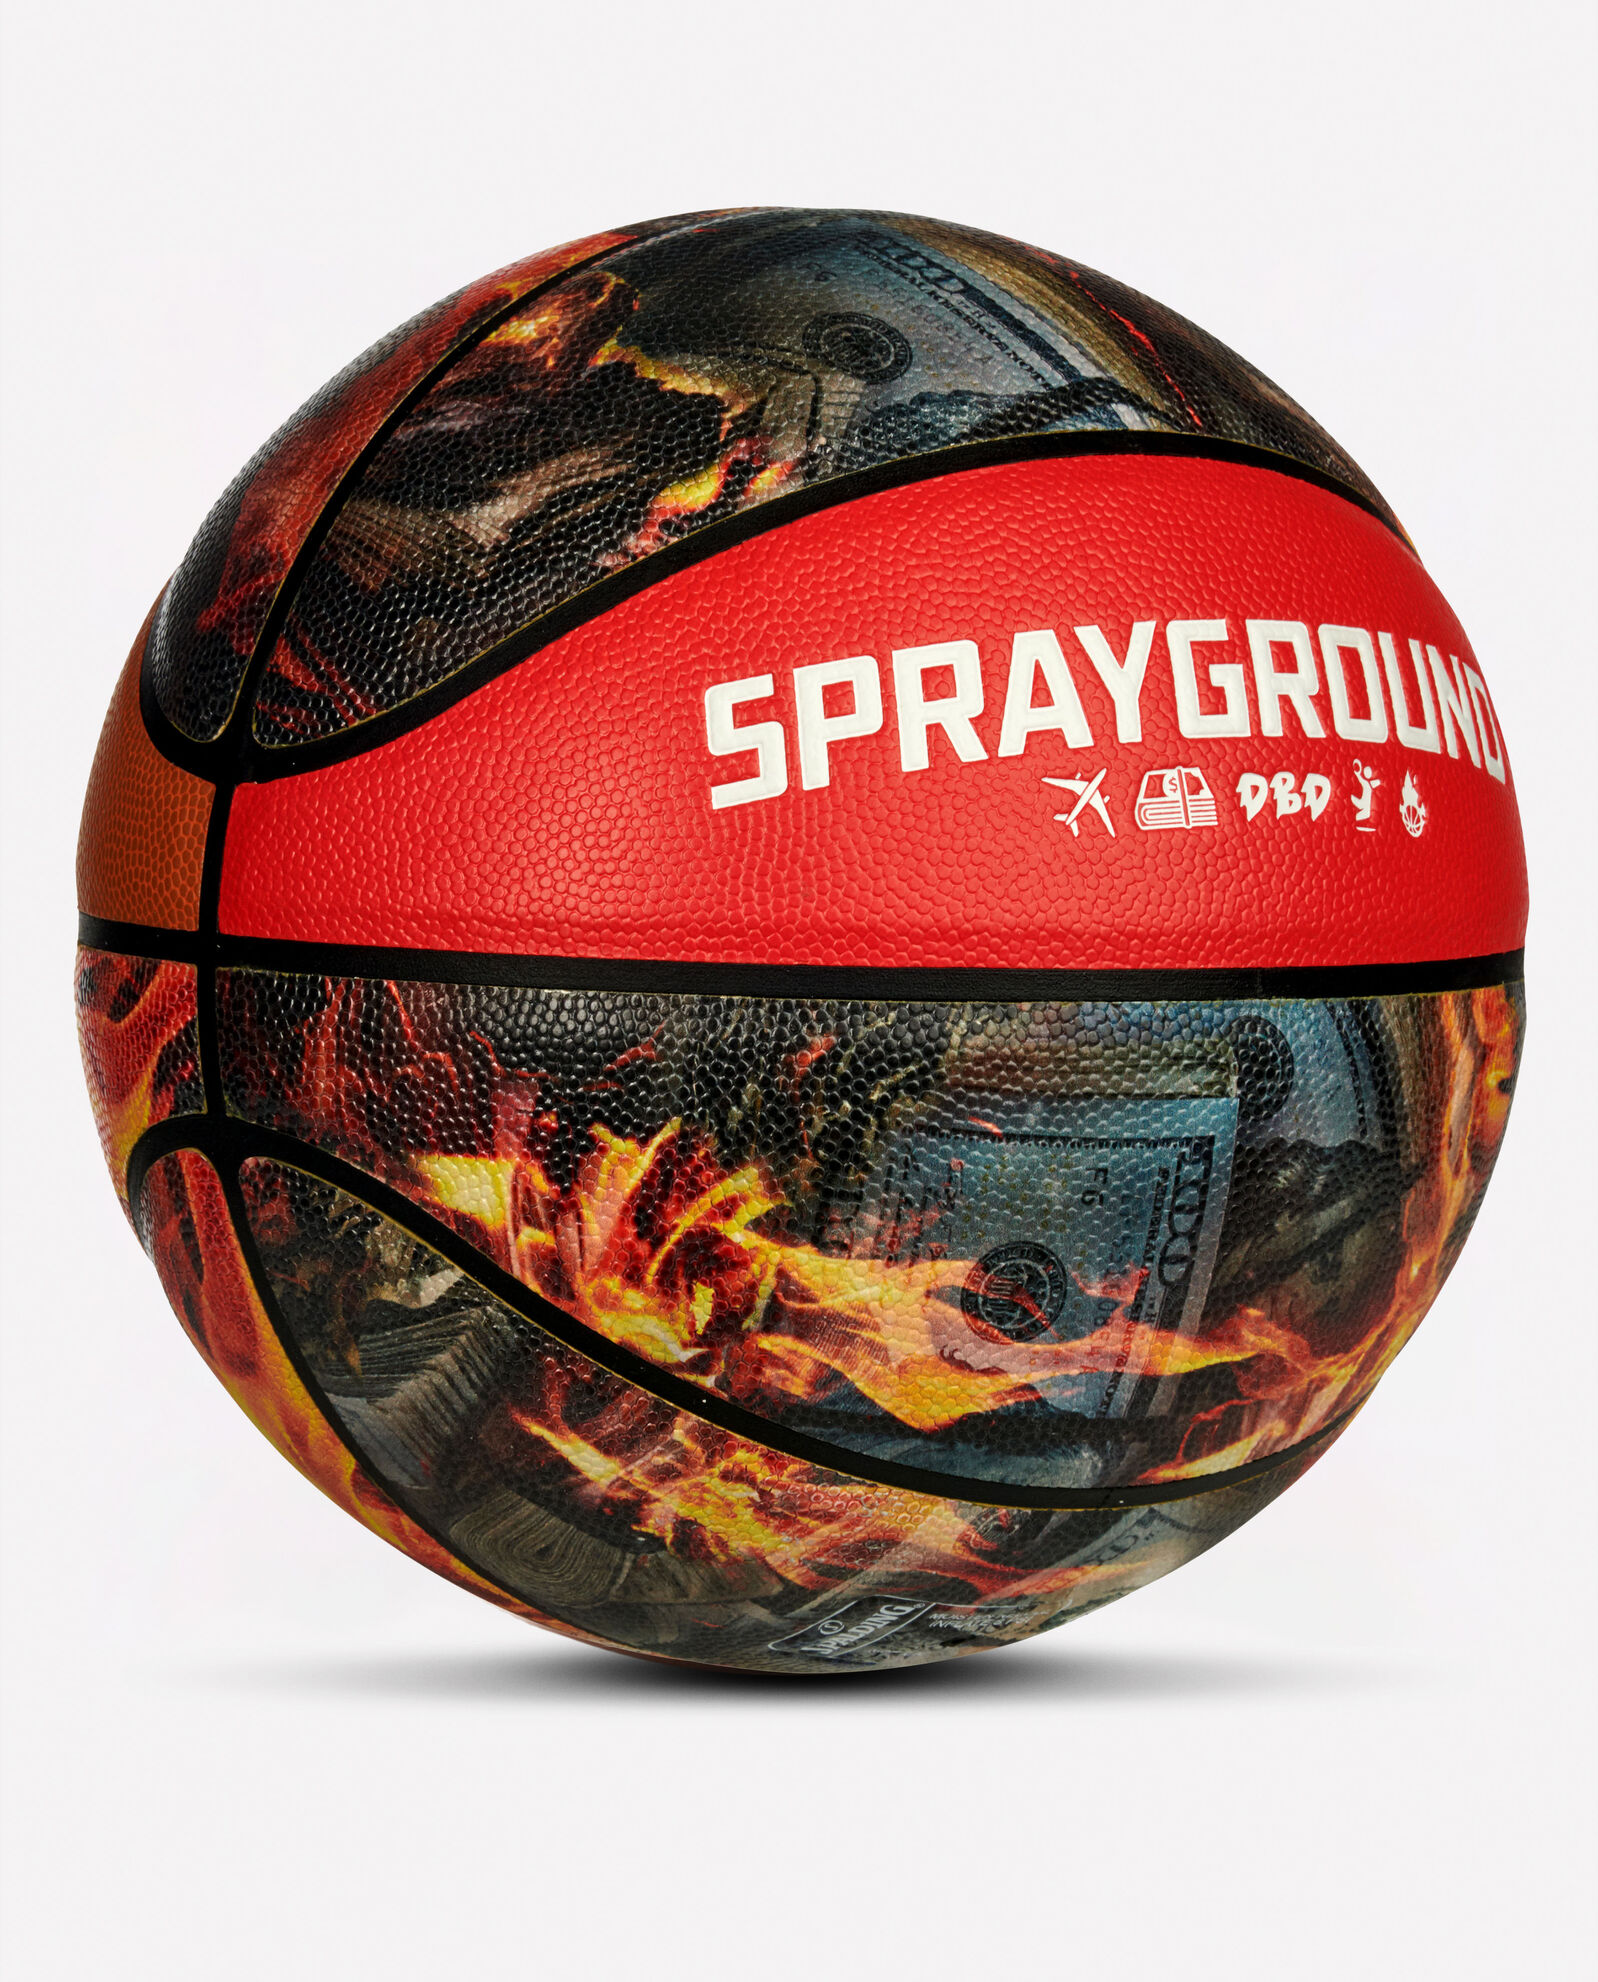 Spalding® x Sprayground 94 Series Fire Money Basketball